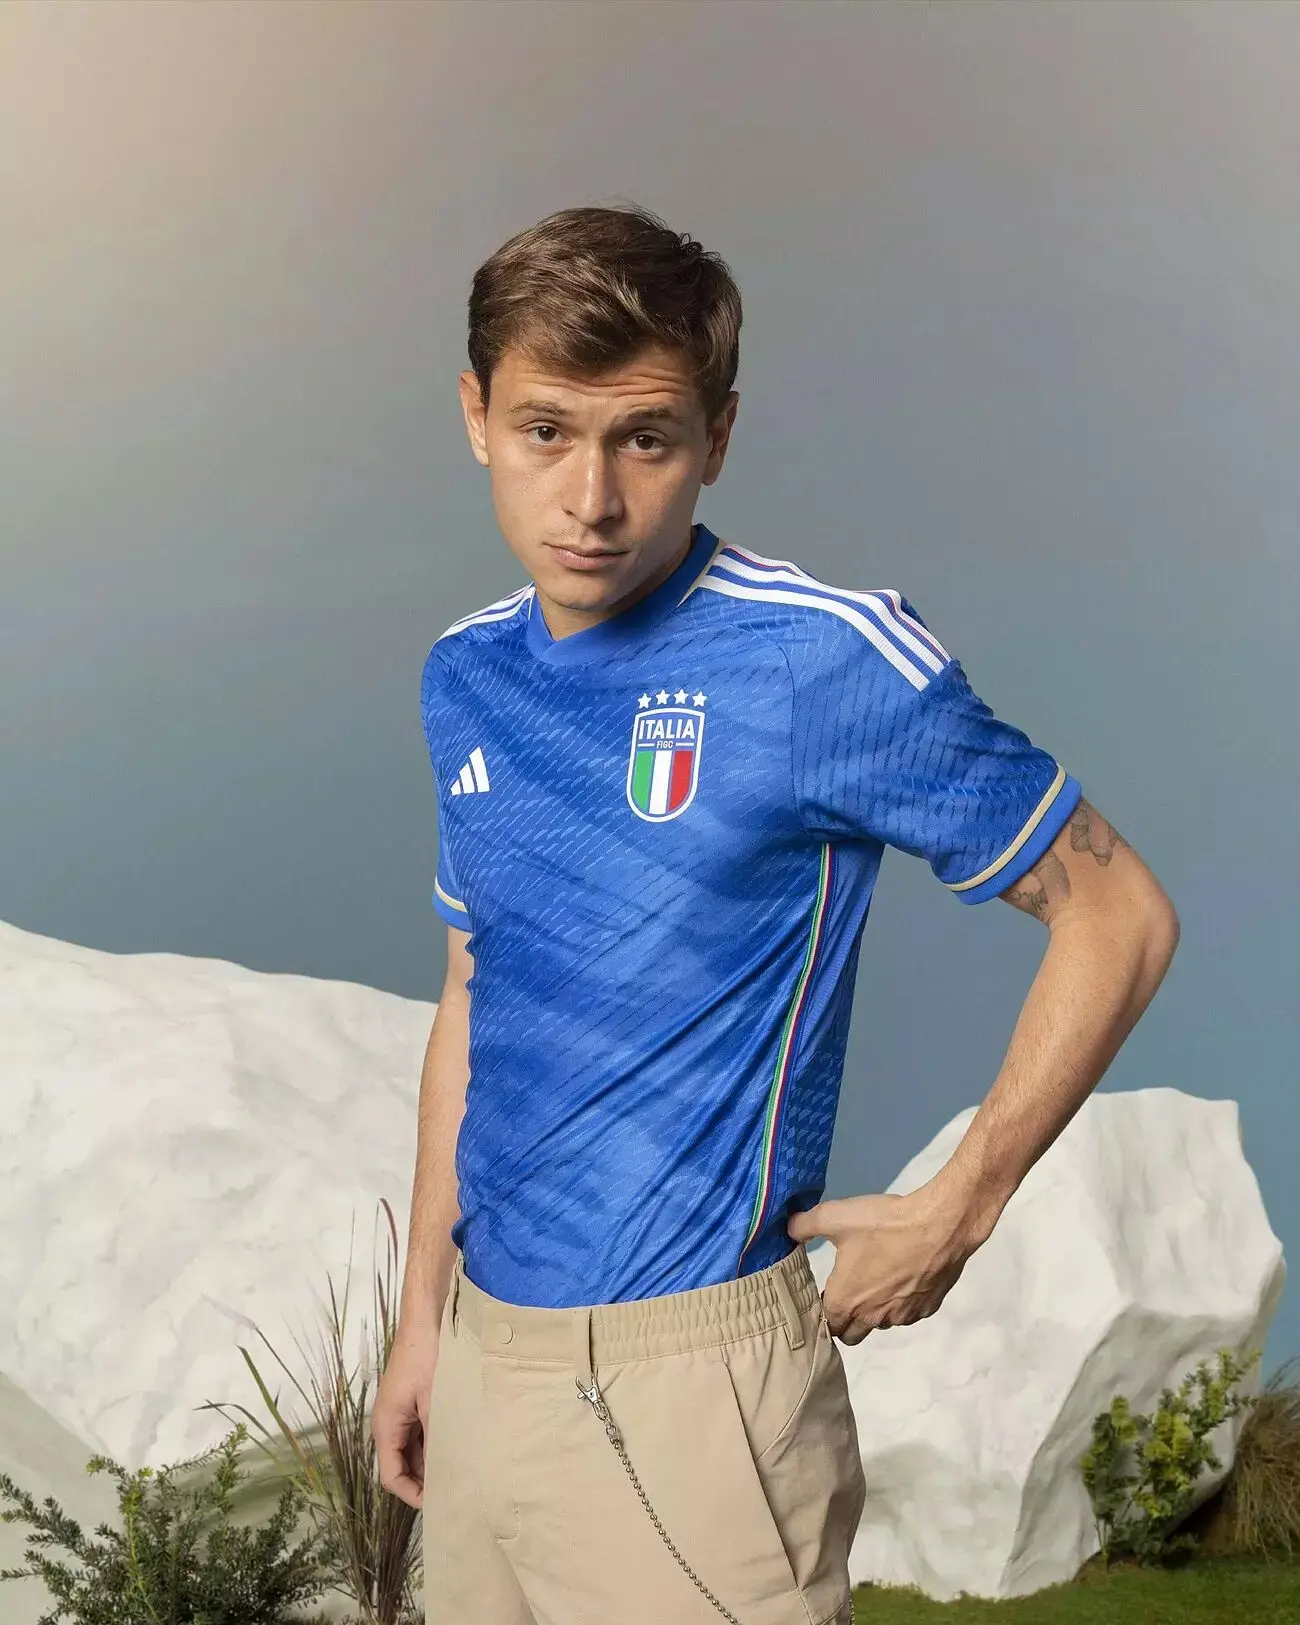 از پیراهن جدید ایتالیا رونمایی شد